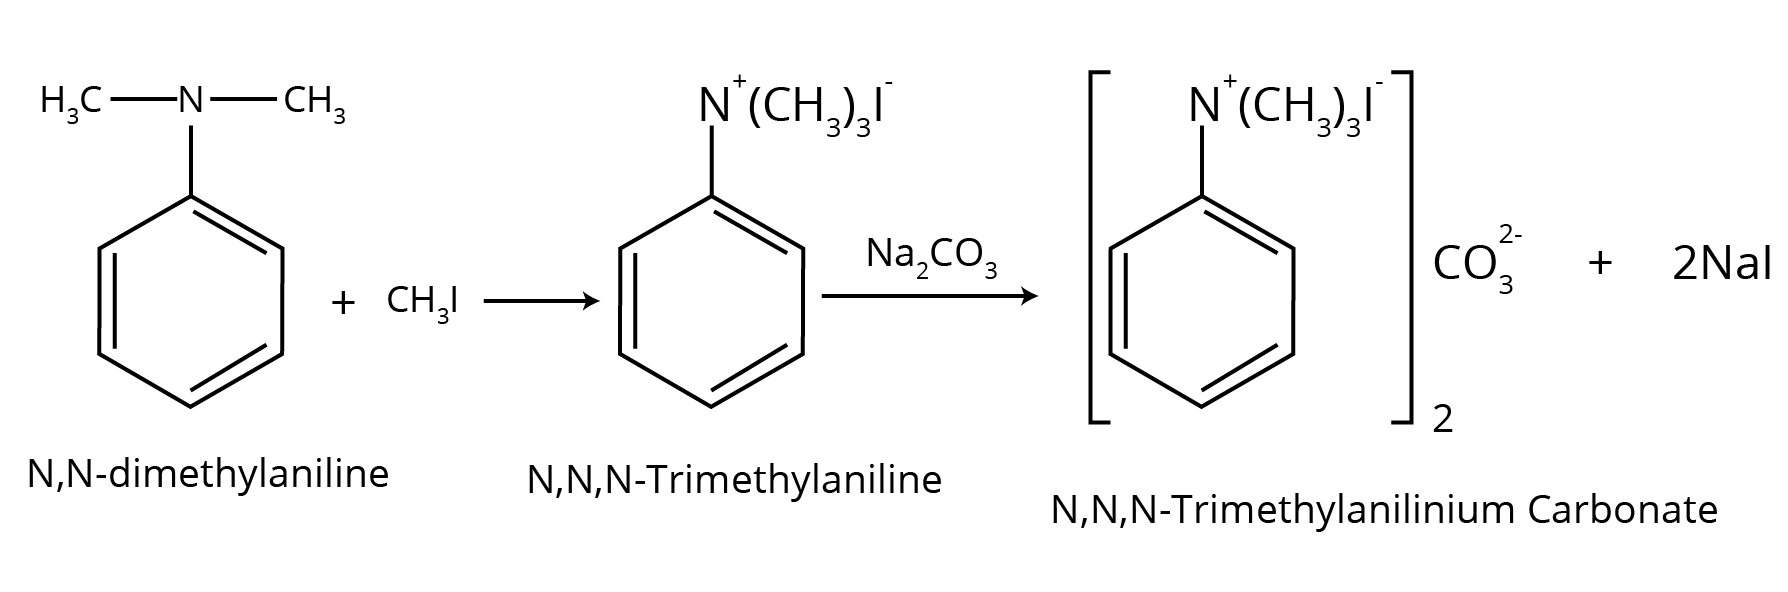 N, N, N−trimethylanilinium carbonate